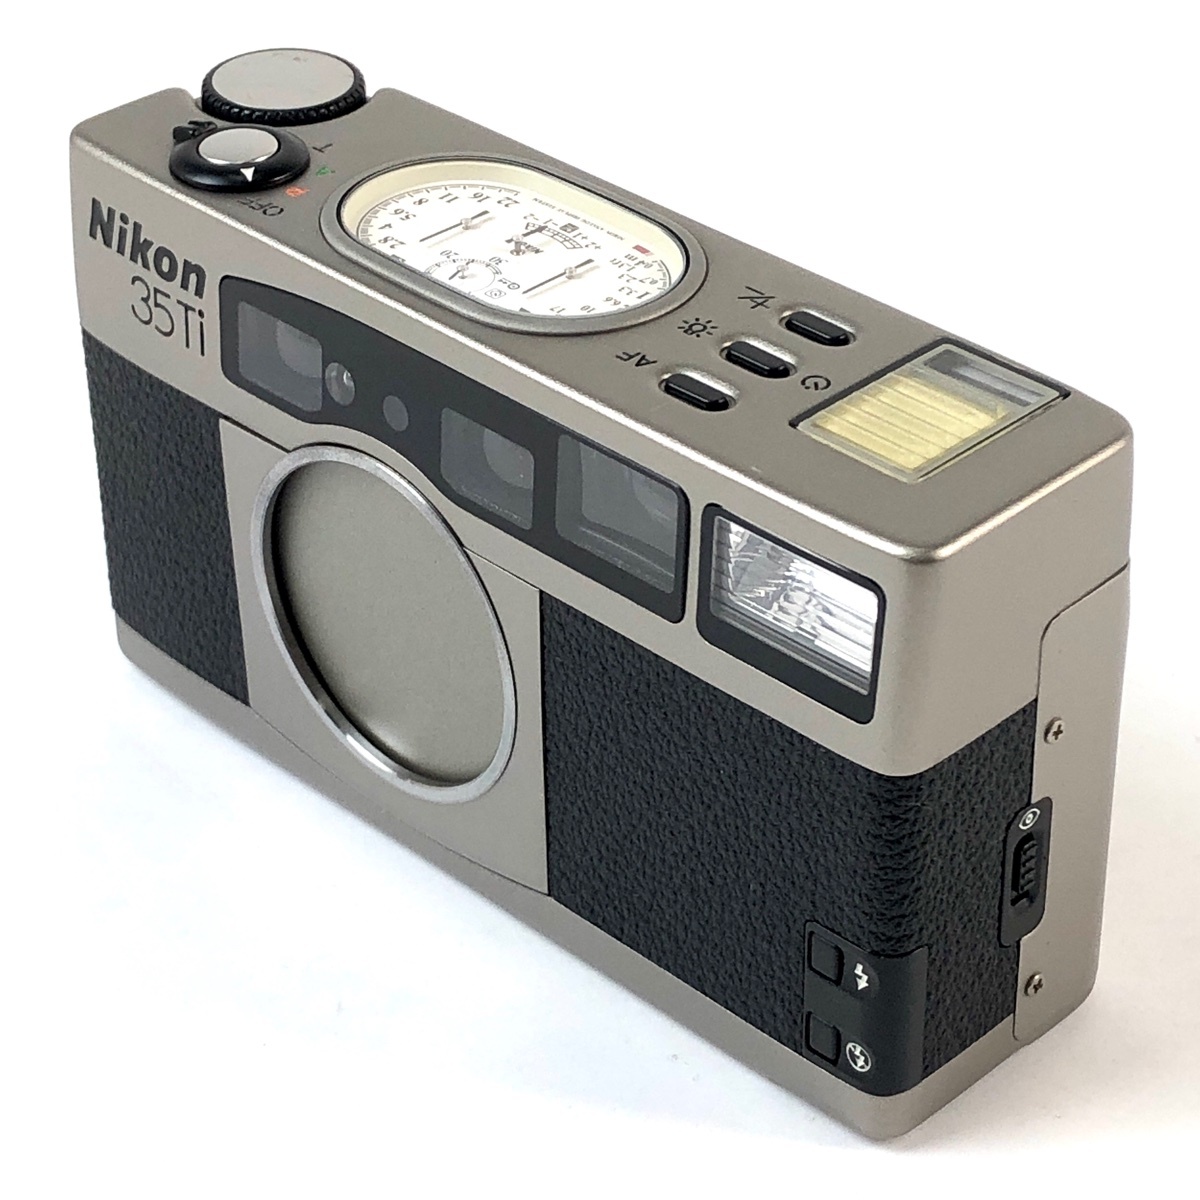 ニコン Nikon 35Ti ［ジャンク品］ フィルム コンパクトカメラ 【中古】の画像2